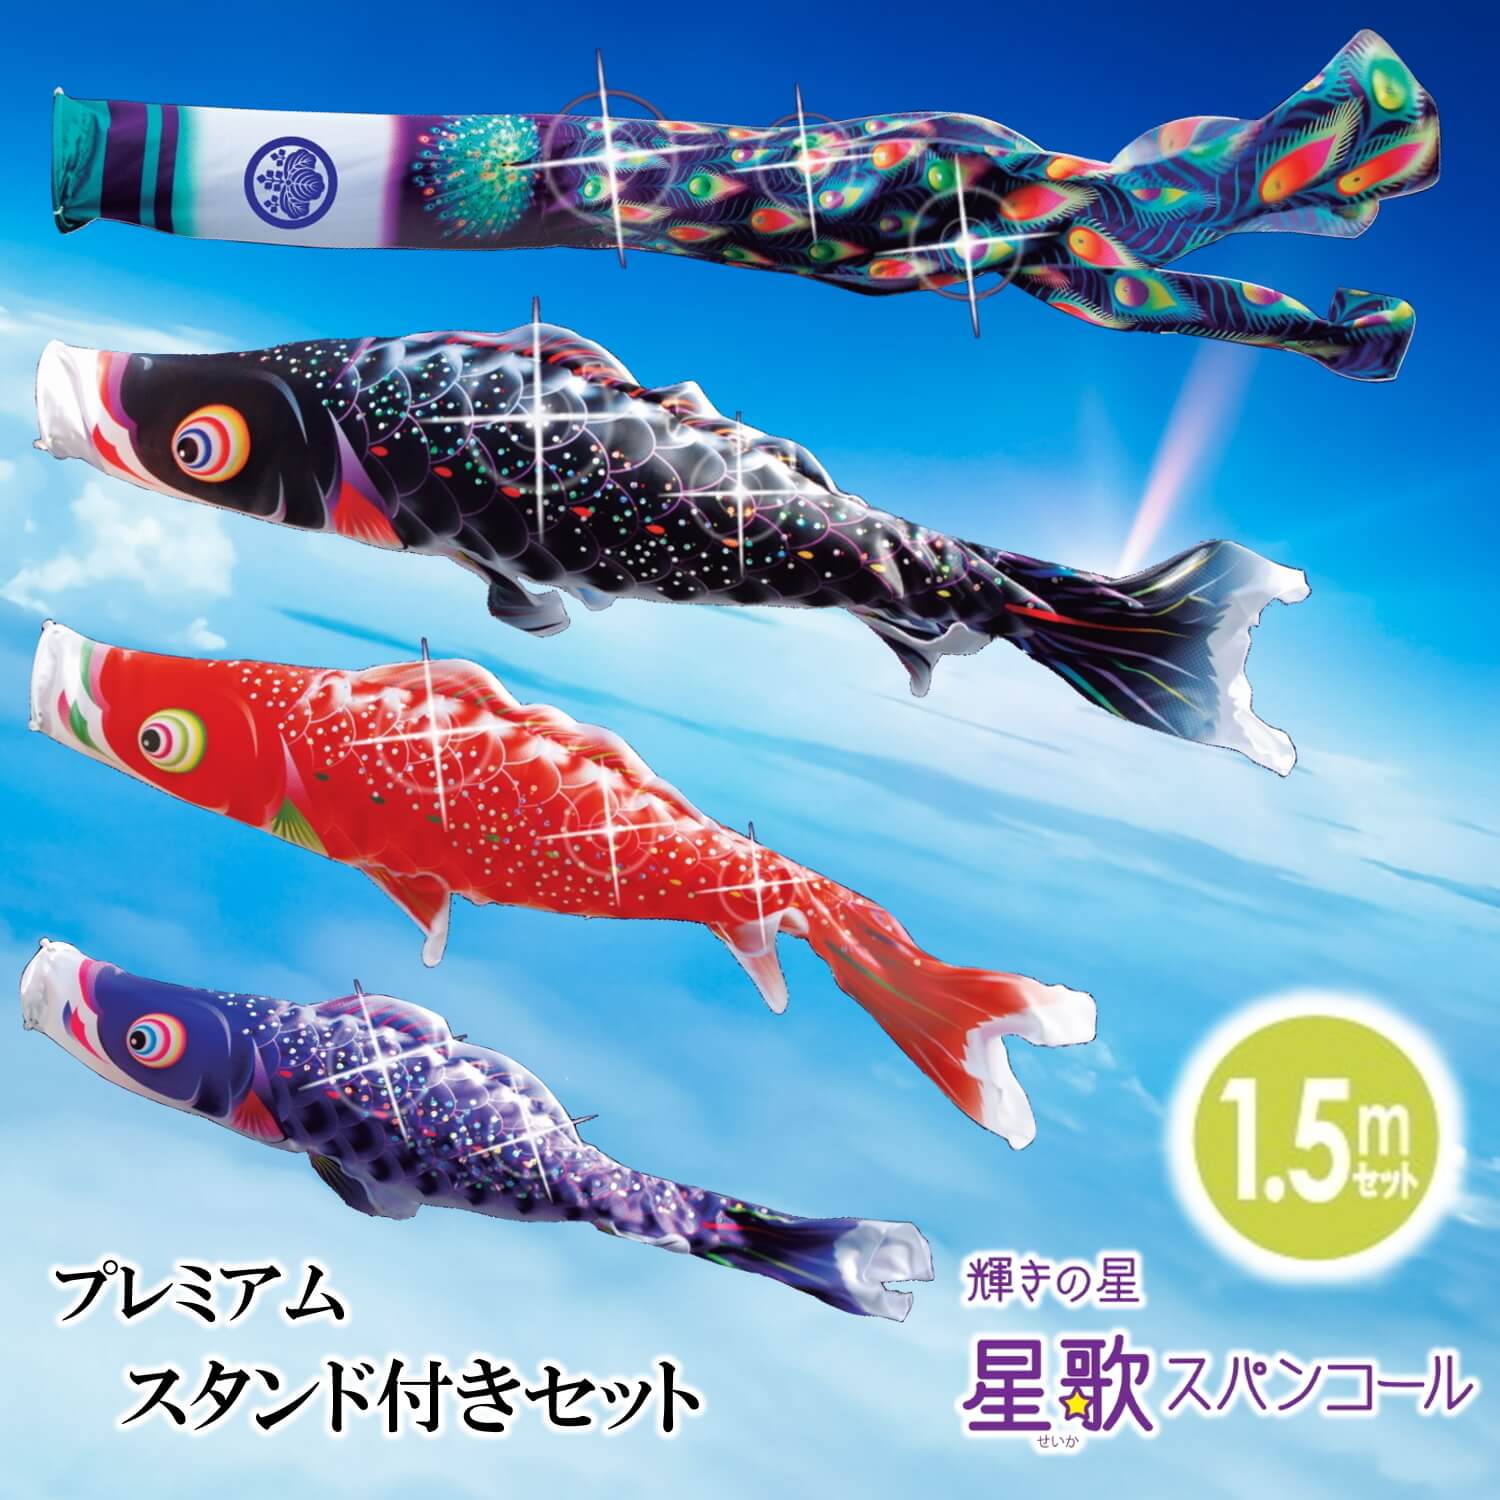 こいのぼり 徳永鯉 鯉のぼり 単品 1.5m 錦龍 雲龍吹流し ポリエステル